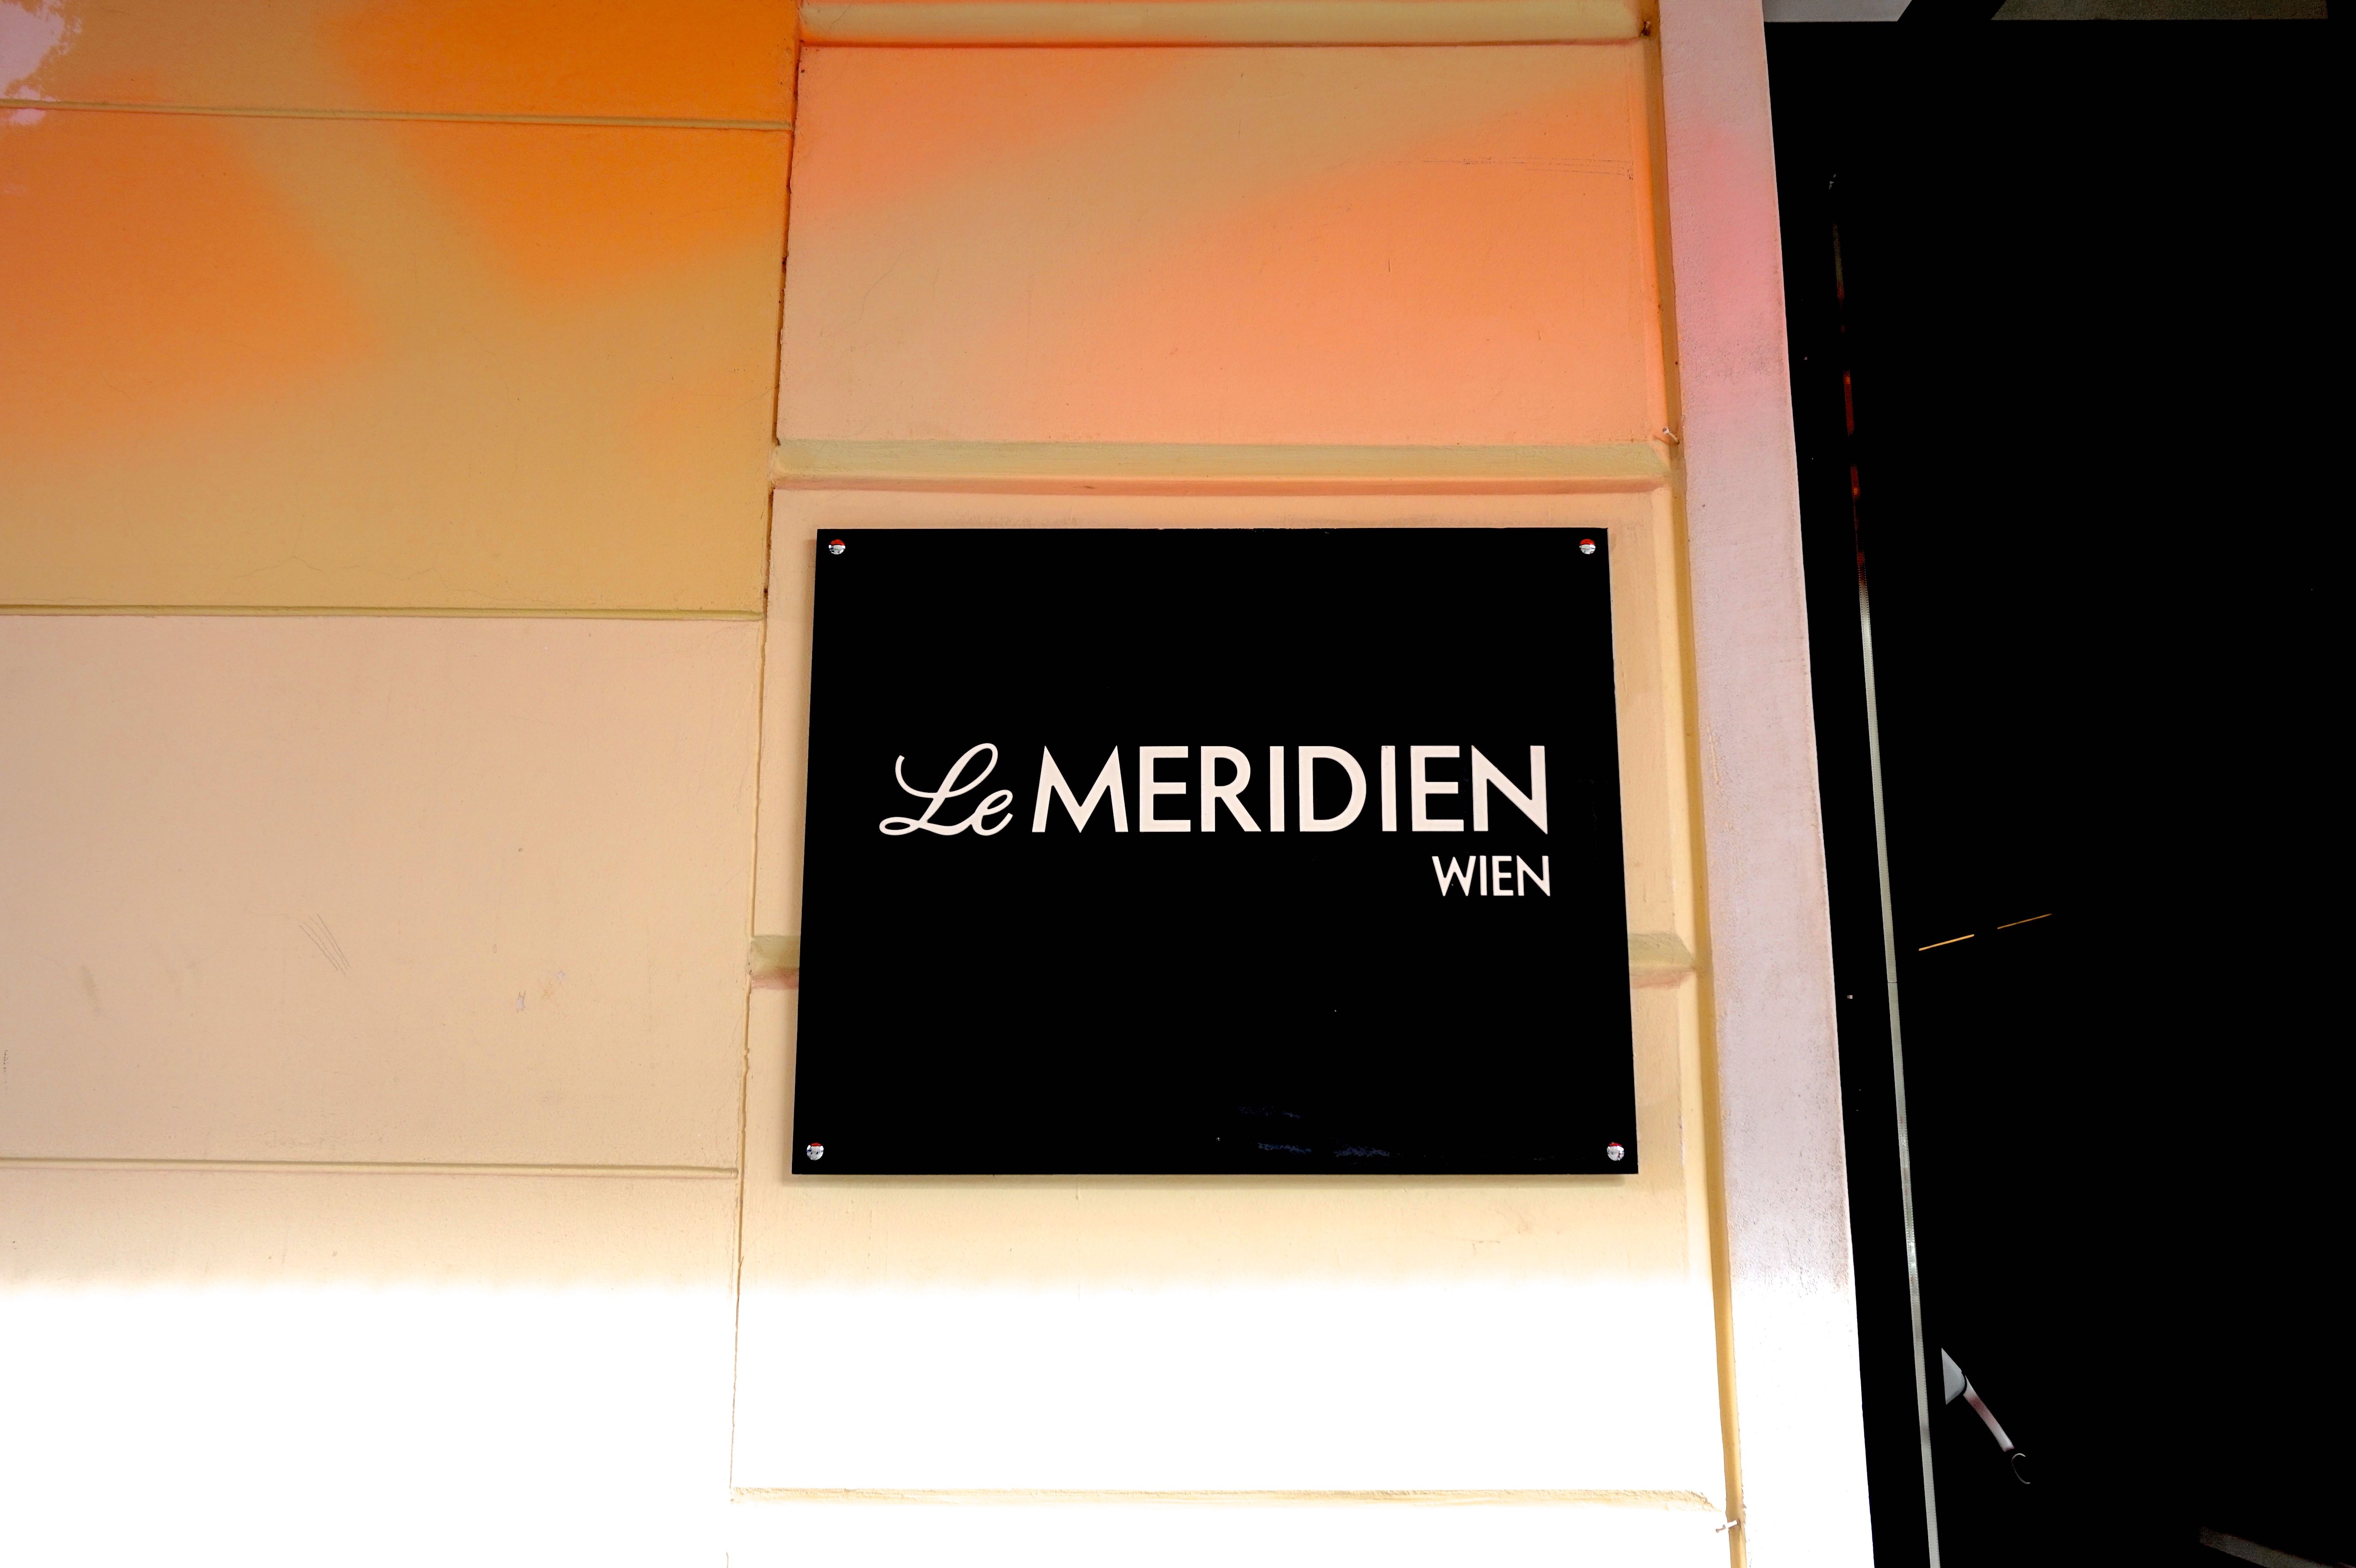 Le Meridien Wien blog review